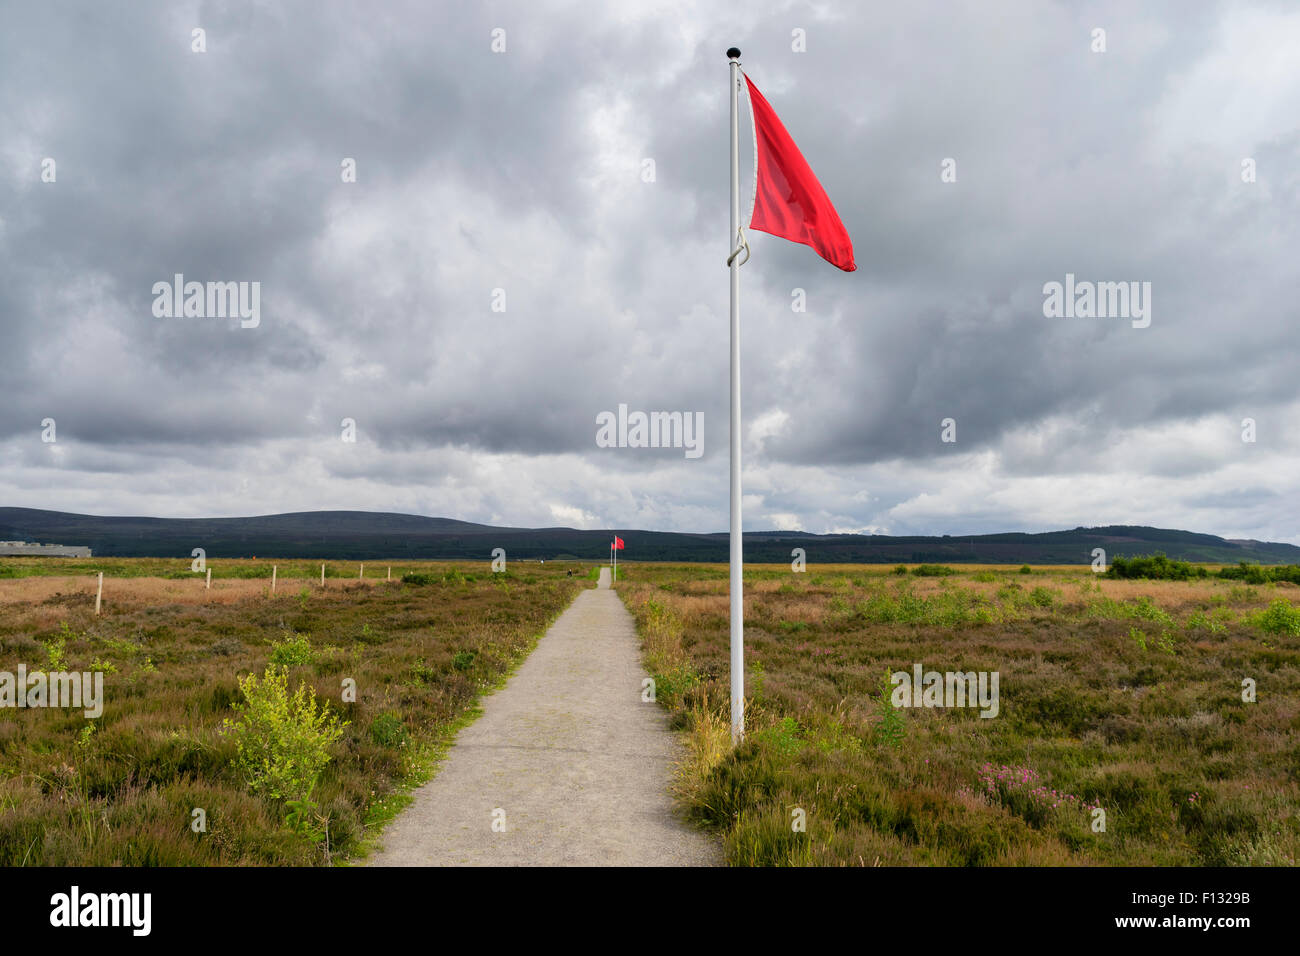 Anzeigenden Frontlinie der englischen Regierungstruppen auf natürliche Moor am ehemaligen Schlachtfeld Culloden Moor Schottland Flagge Stockfoto